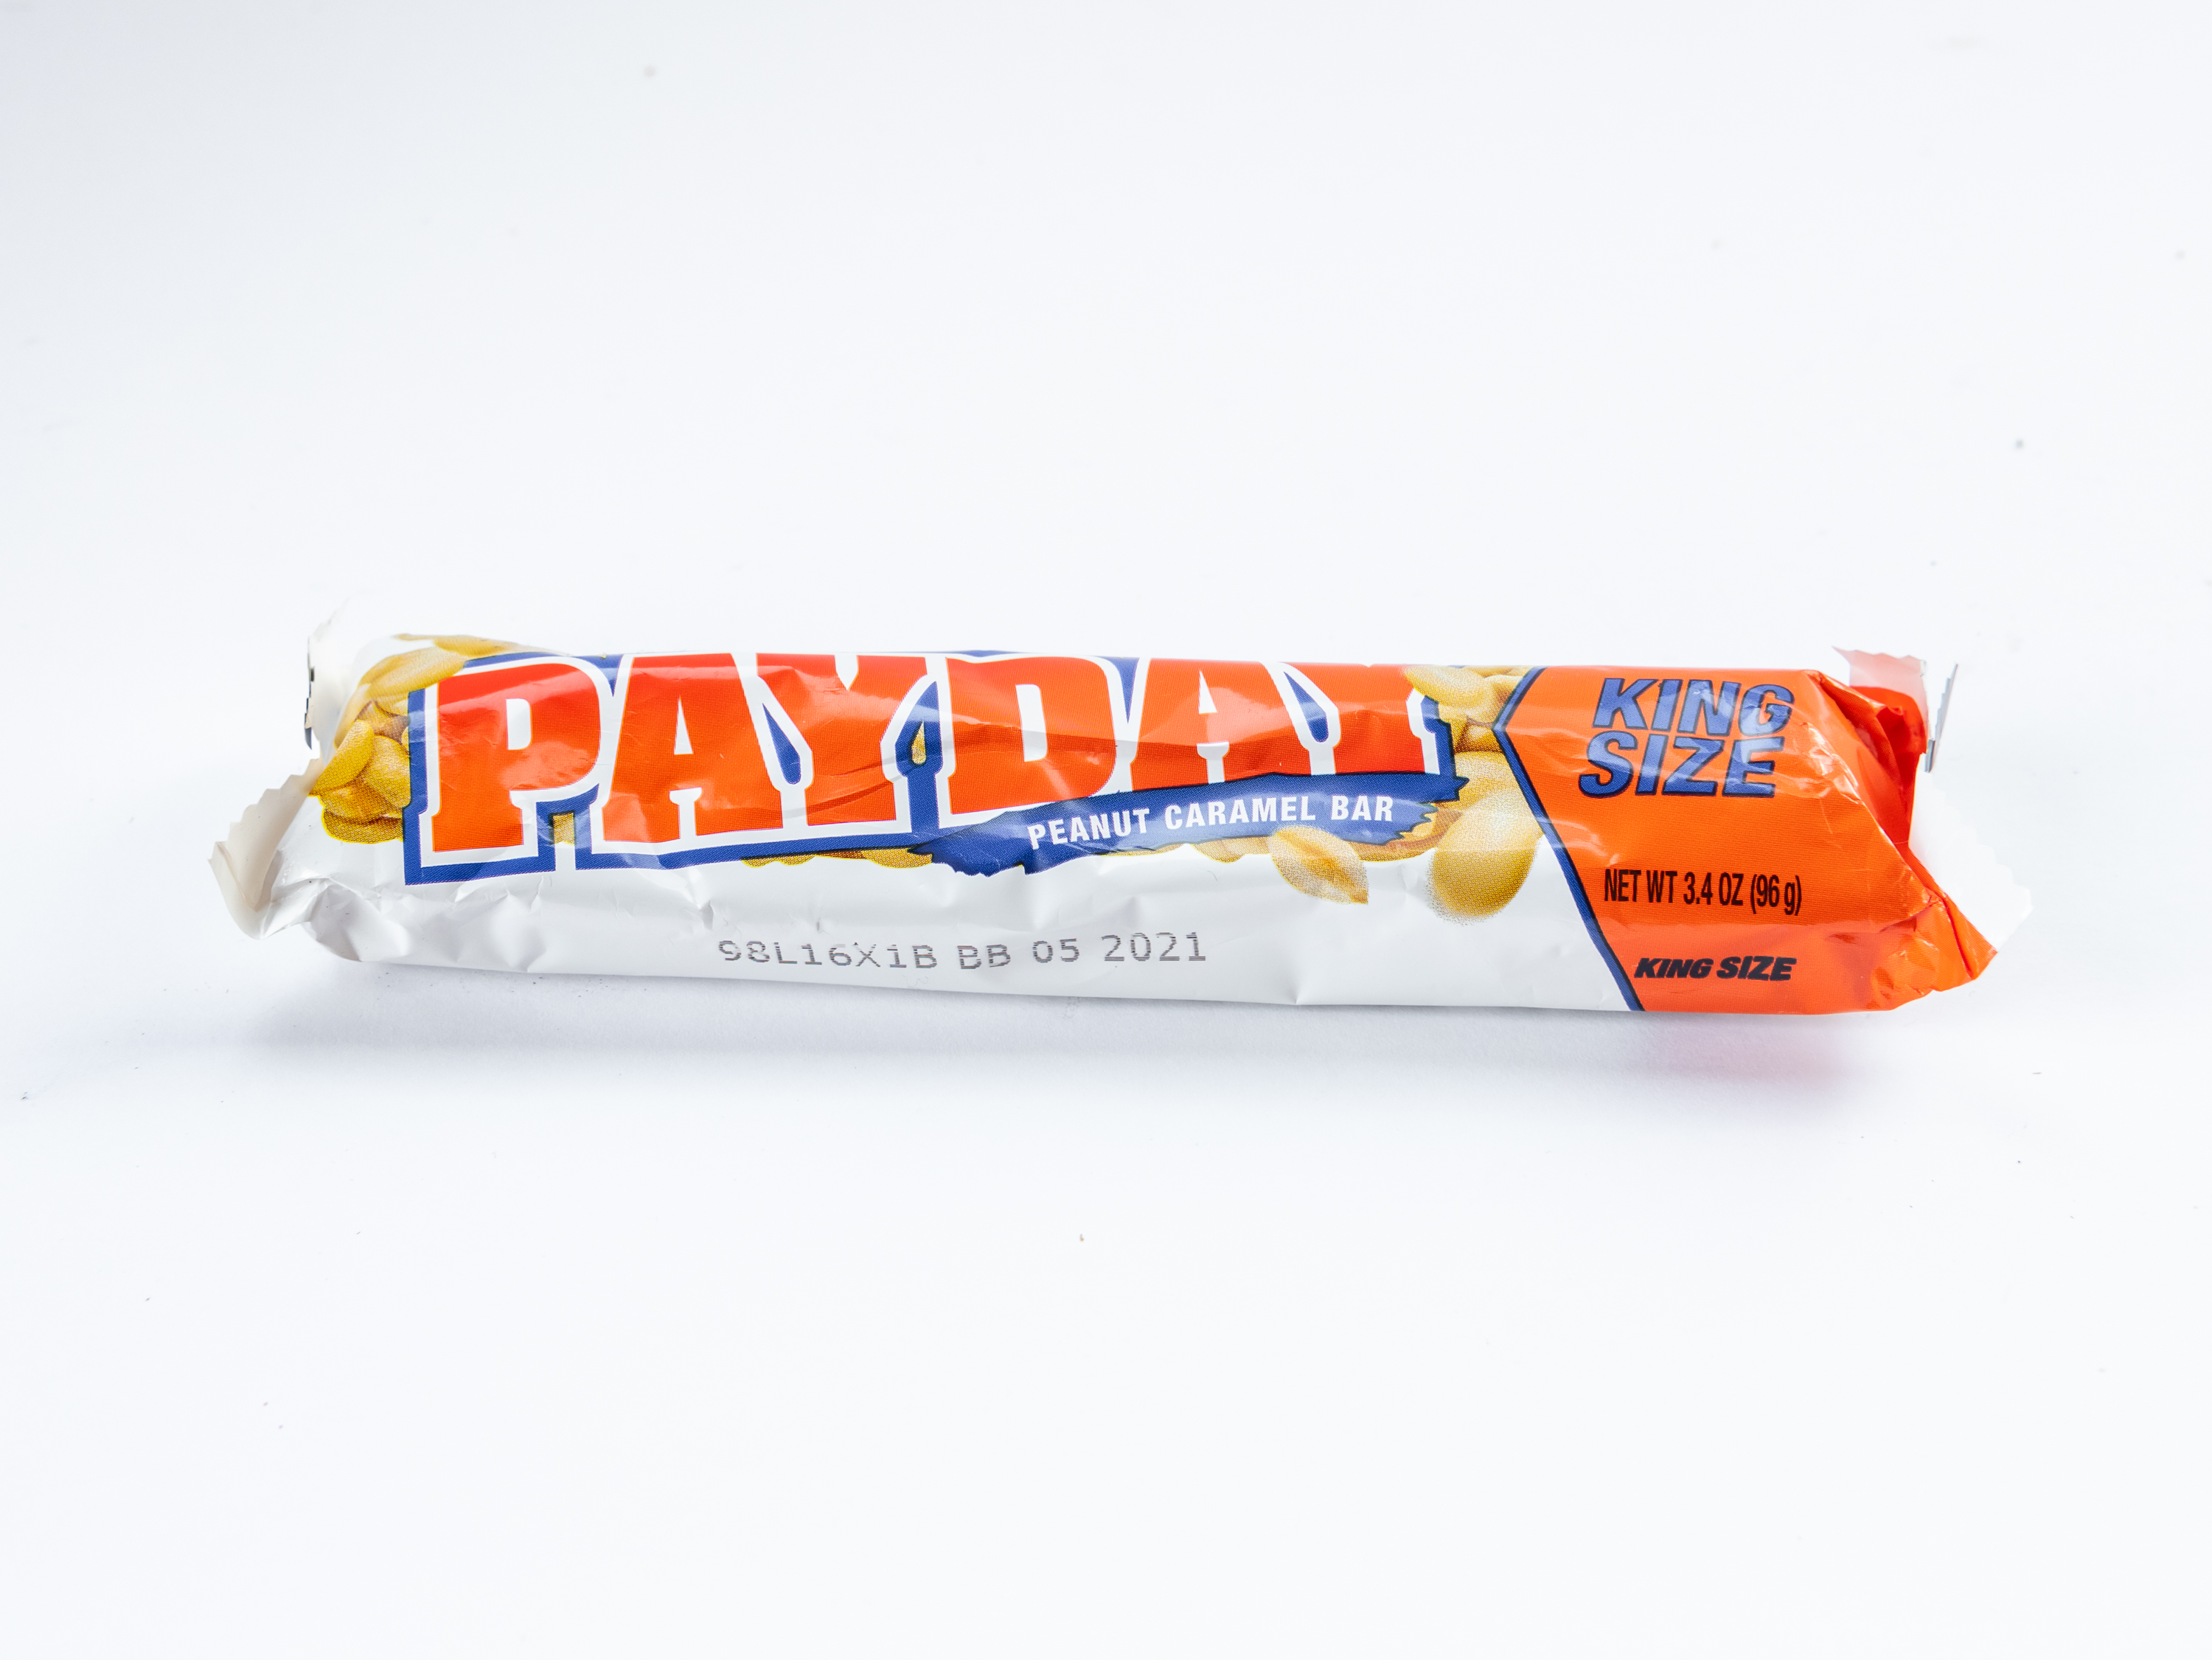 Order Payday King SZ 3.4 oz. food online from Loop store, Vallejo on bringmethat.com